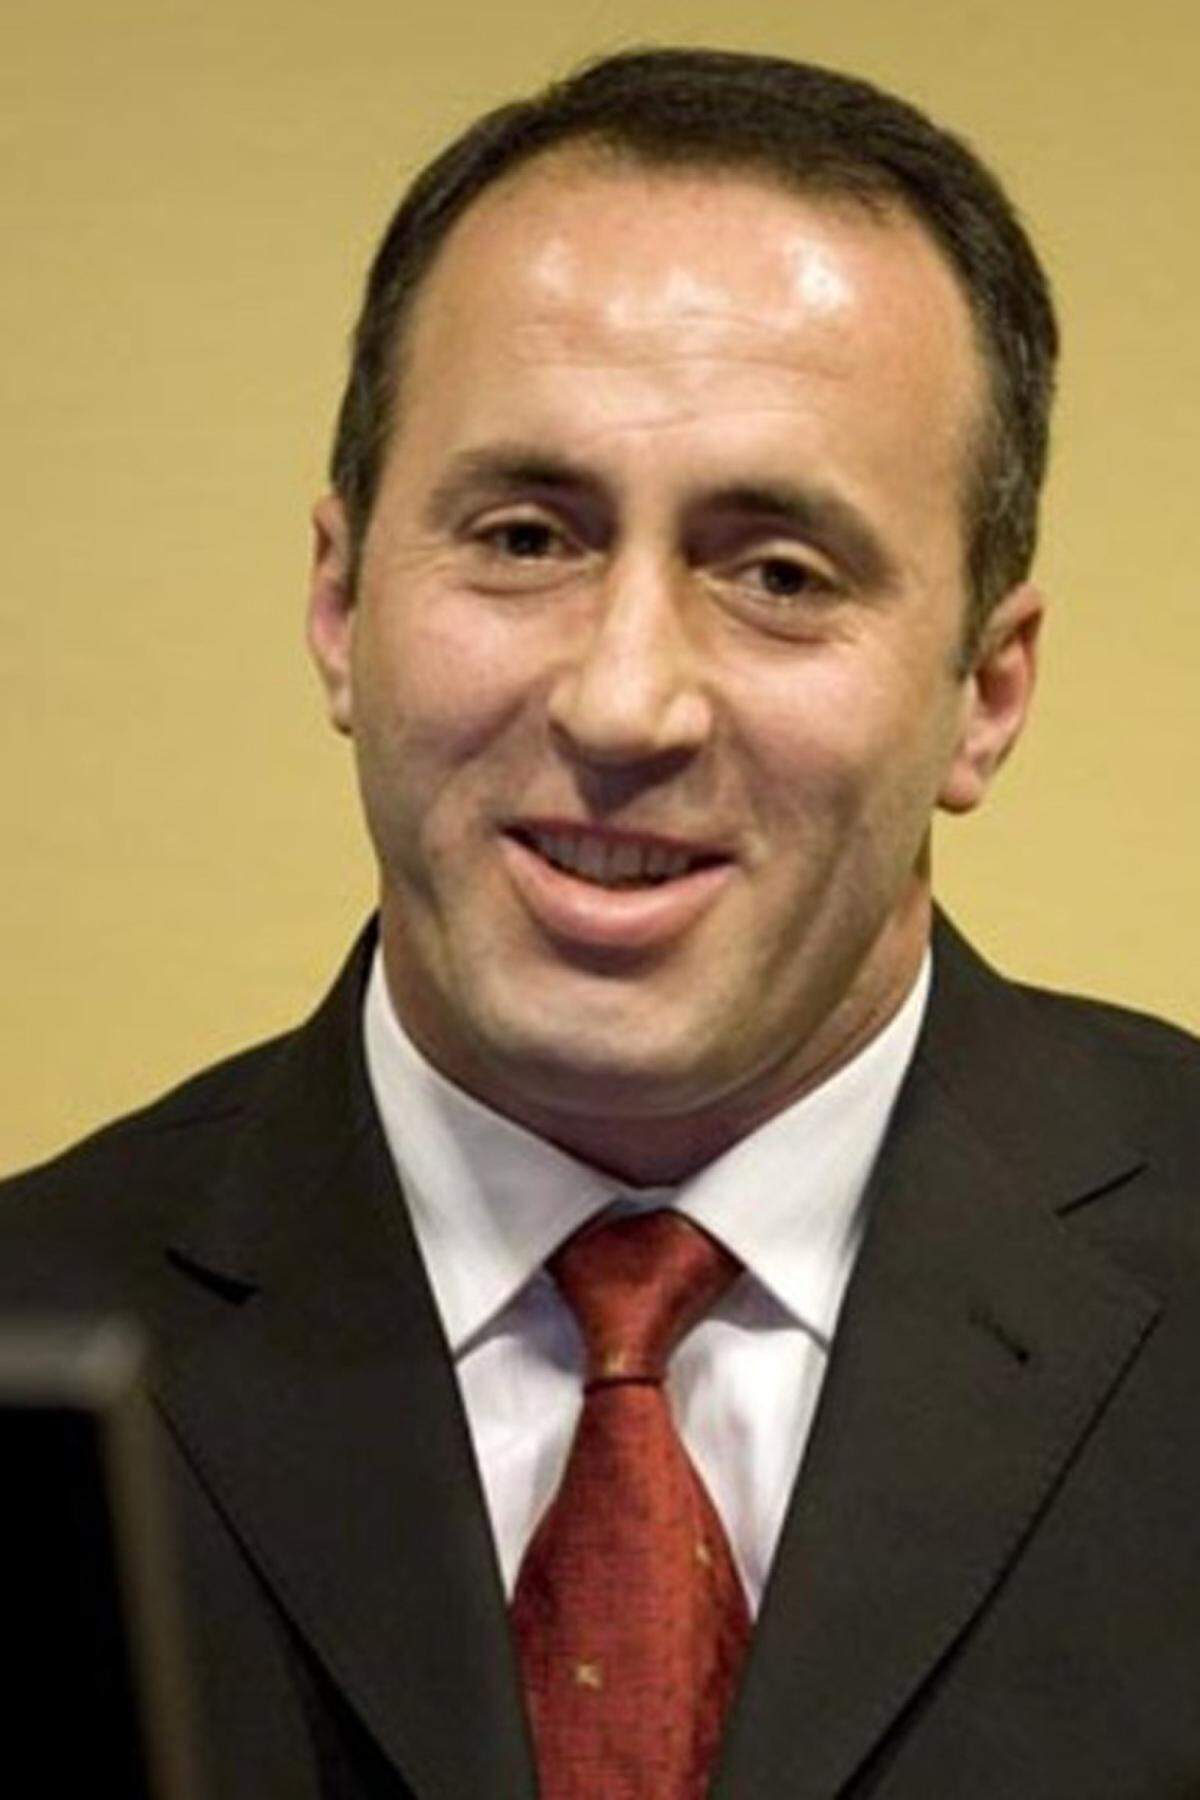 Der Ex-Feldkommandant der kosovo-albanischen Untergrundarmee U?K war wegen der Misshandlung und Ermordung serbischer Zivilisten angeklagt. Er wurde am 19. November 2012 freigesprochen. Haradinaj war bereits im April 2008 freigesprochen worden, das Gericht hatte aber eine Neuaufnahme des Verfahrens veranlasst, da zahlreiche Zeugen eingeschüchtert worden seien.